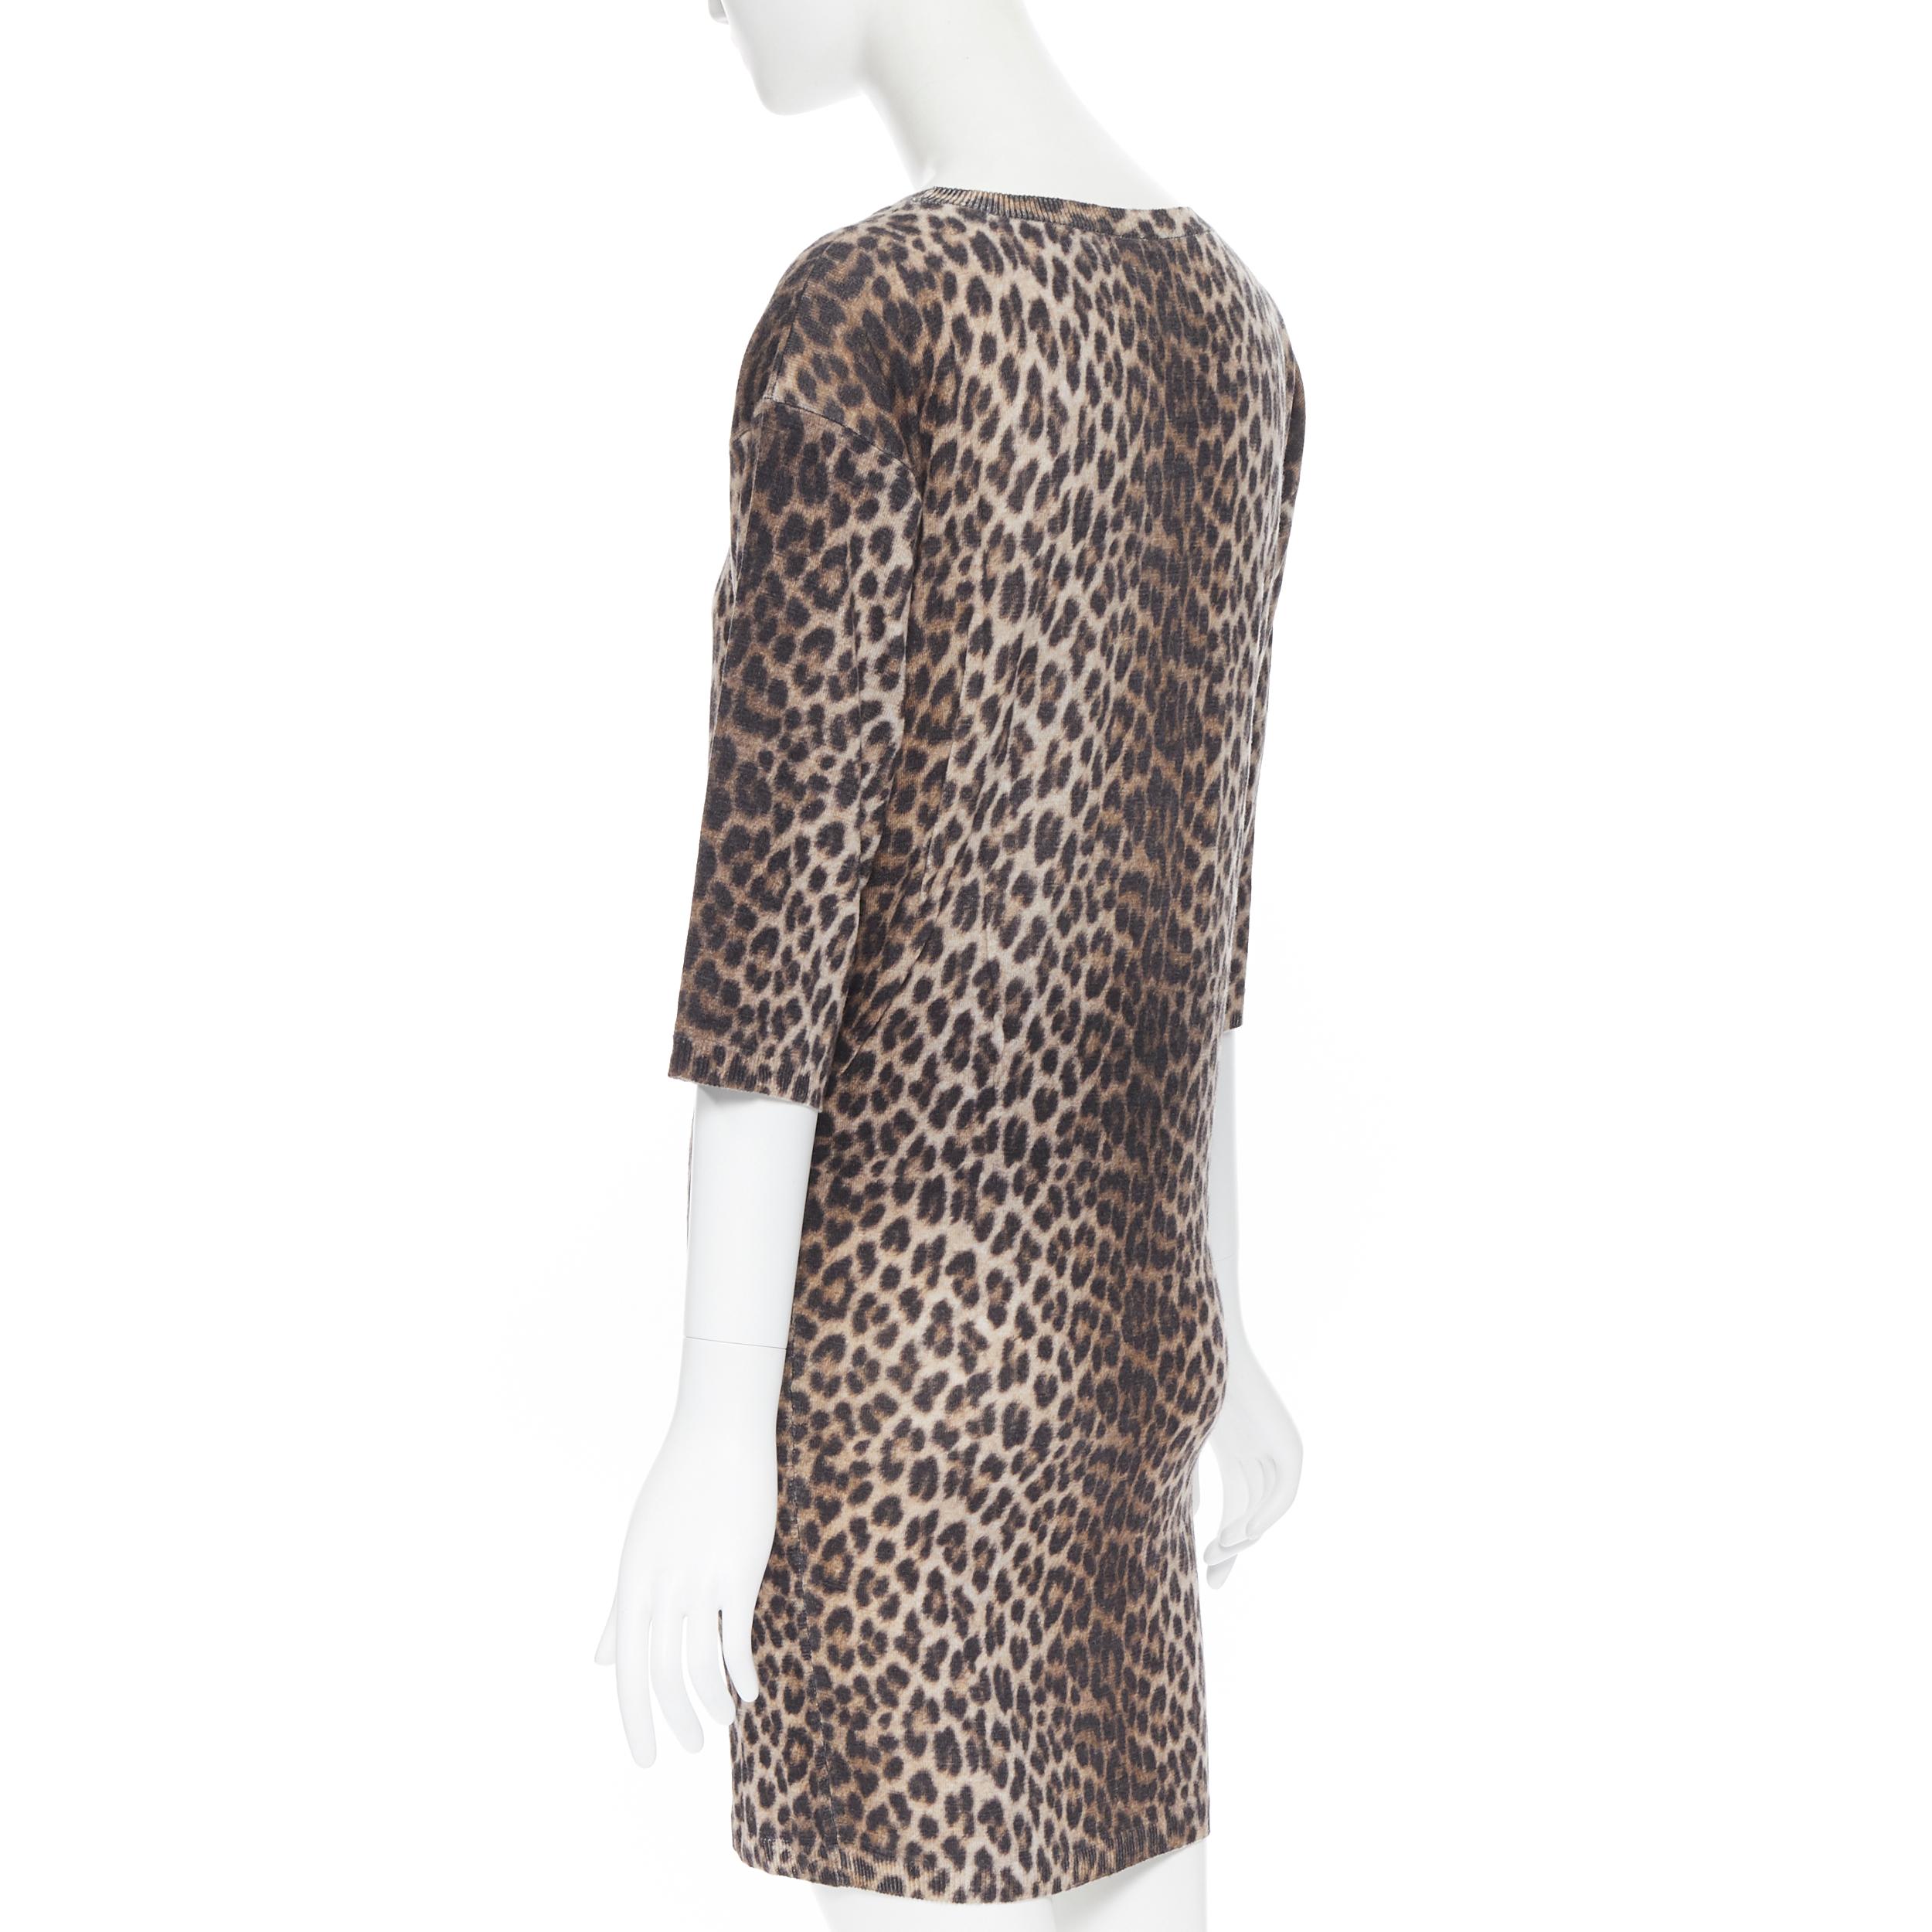 LANVIN ELBAZ 2010 100% wool brown leopard spot 3/4 sleeve knit sweater dress XS 1